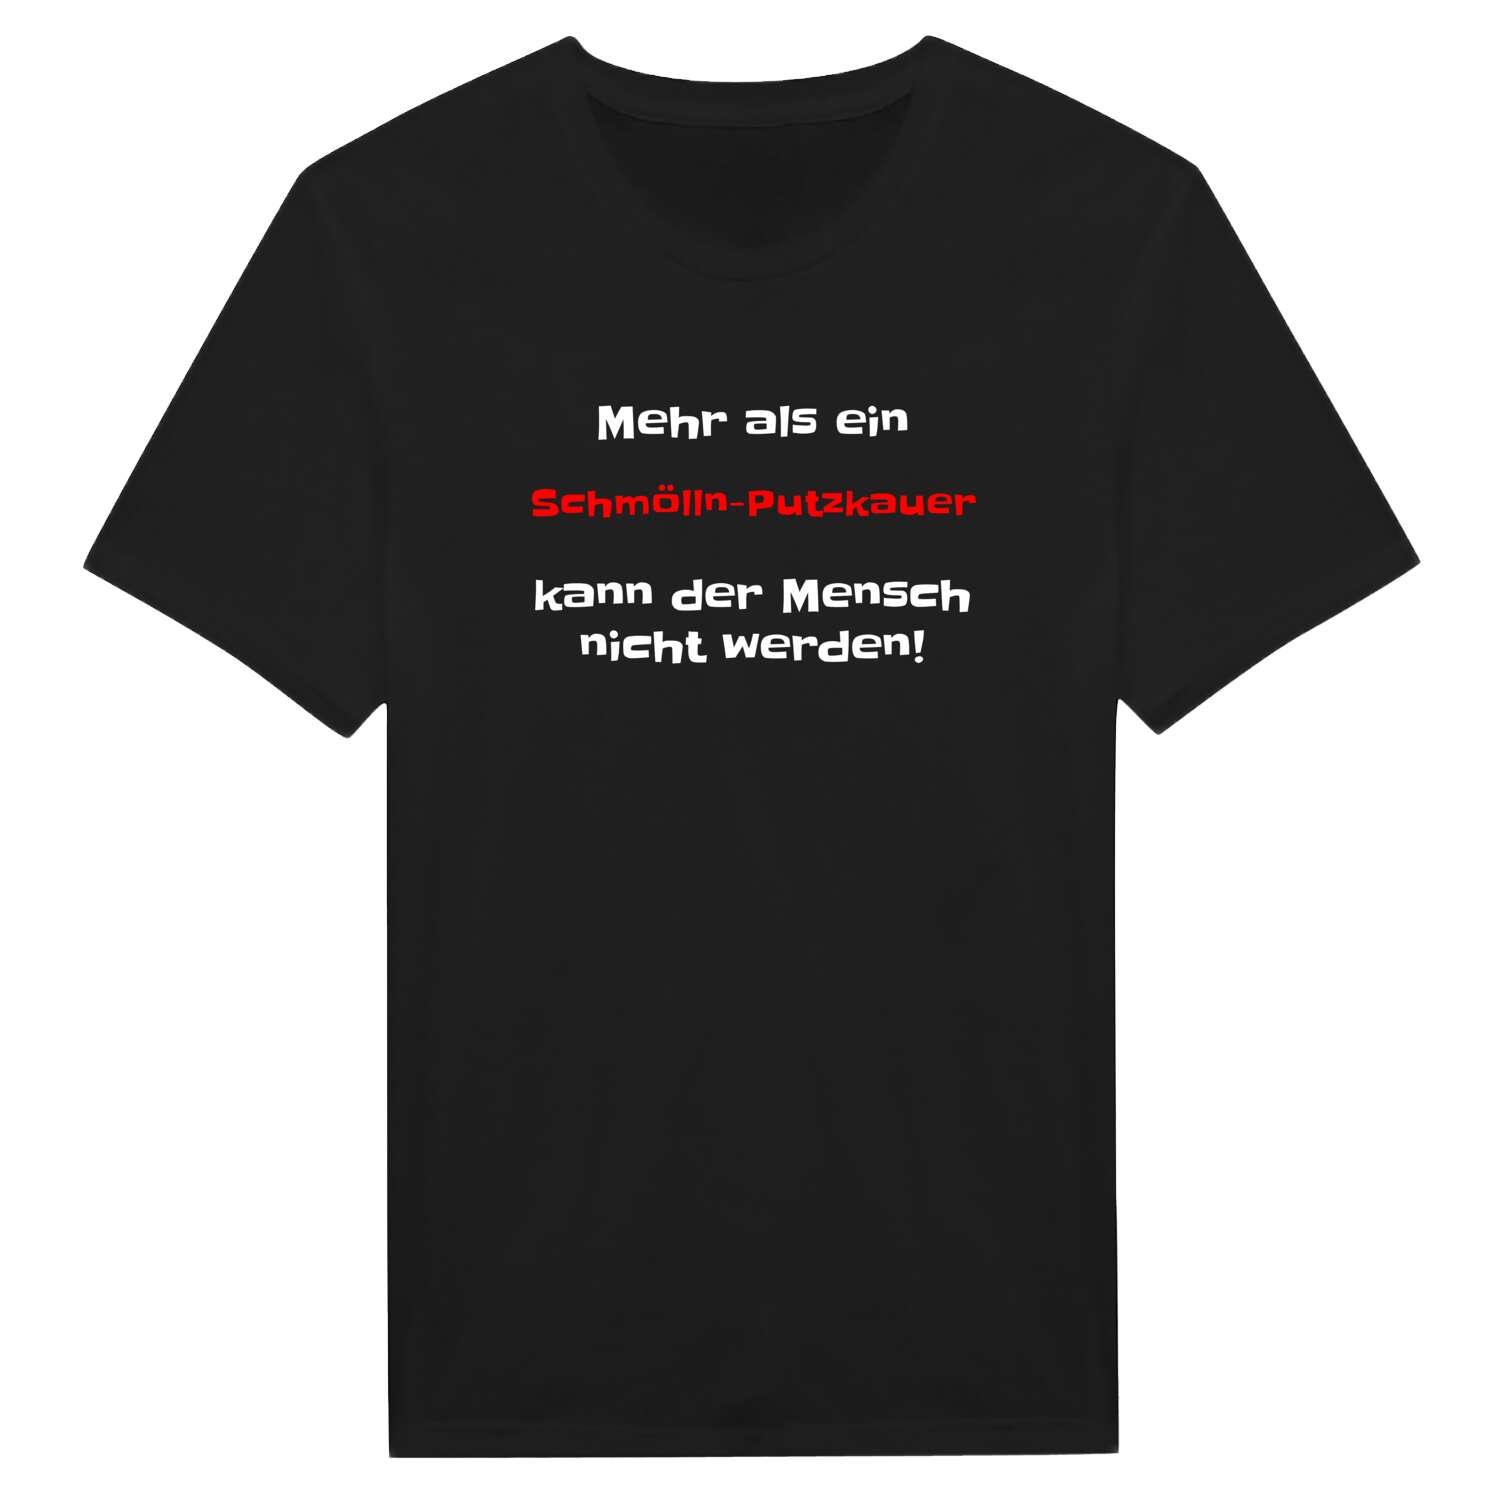 Schmölln-Putzkau T-Shirt »Mehr als ein«